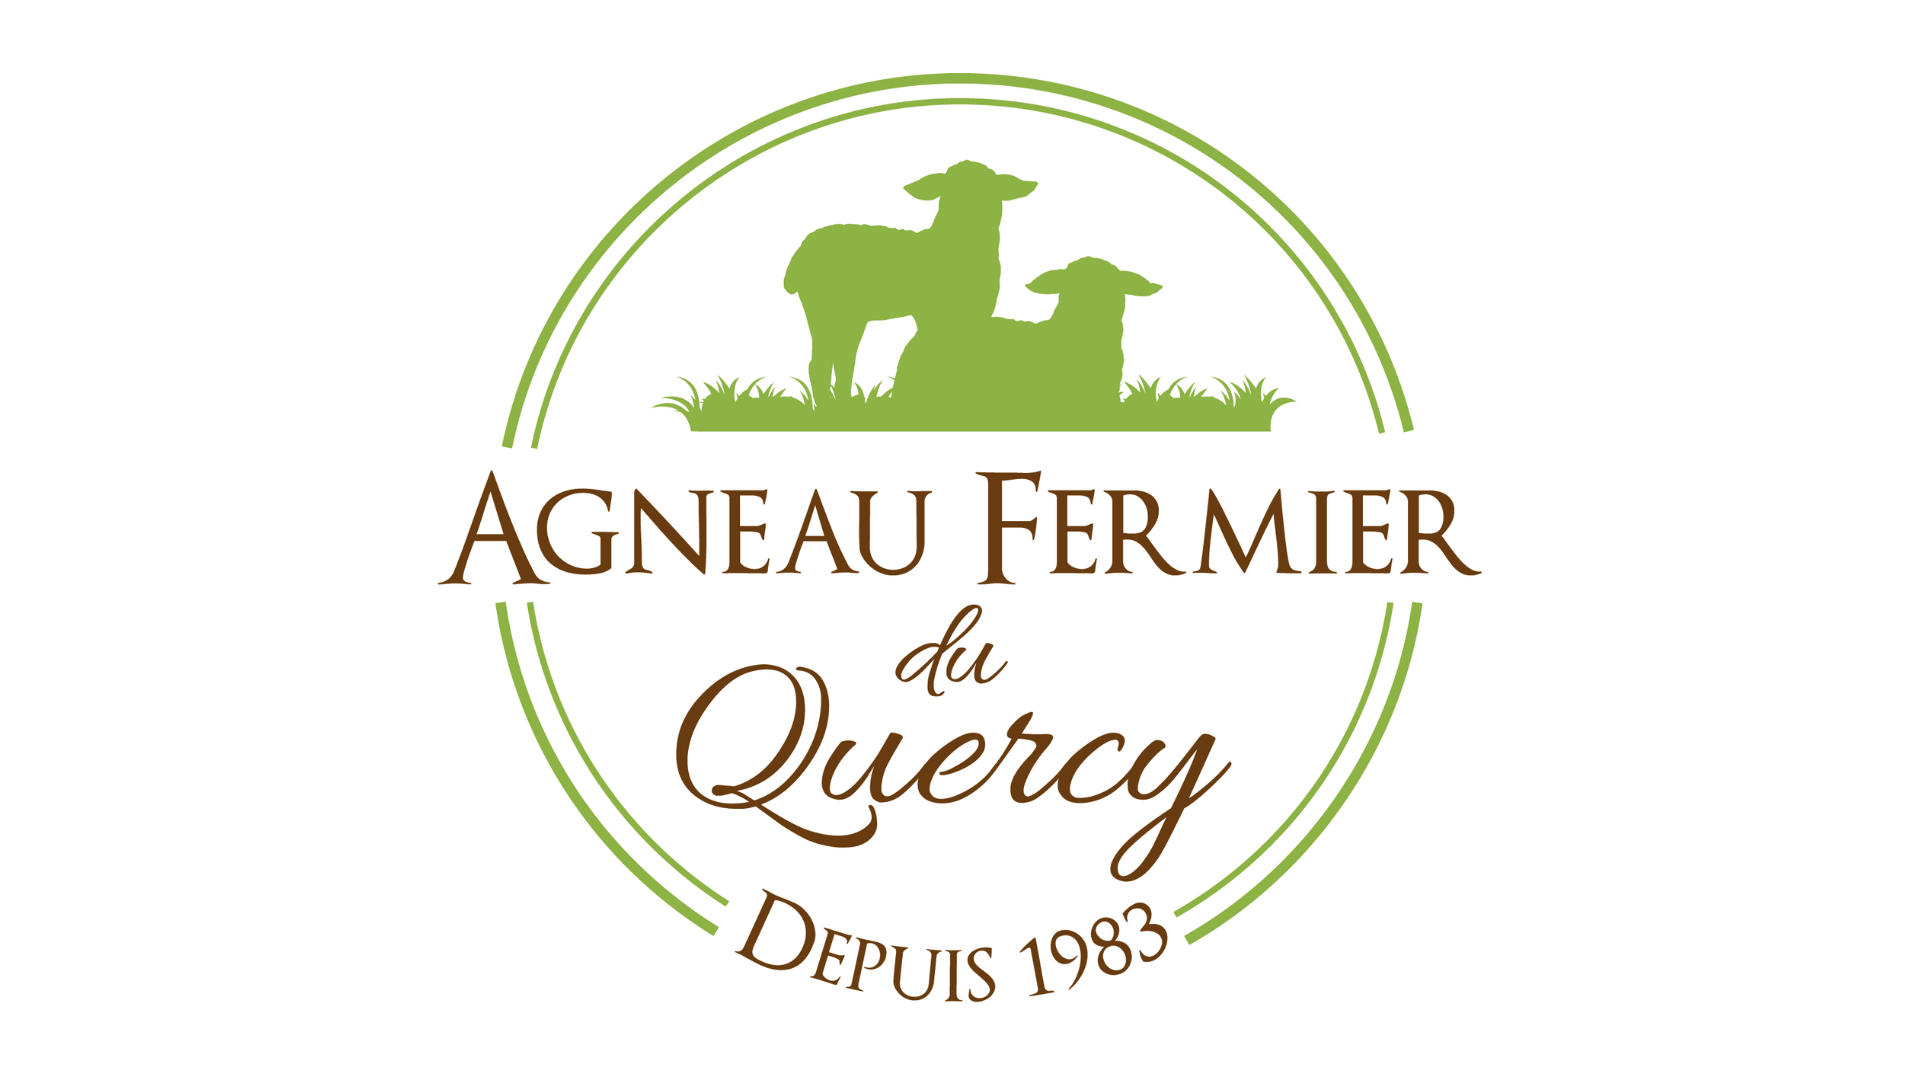 Agneau Fermier du Quercy : Un nouveau logo plus dynamique